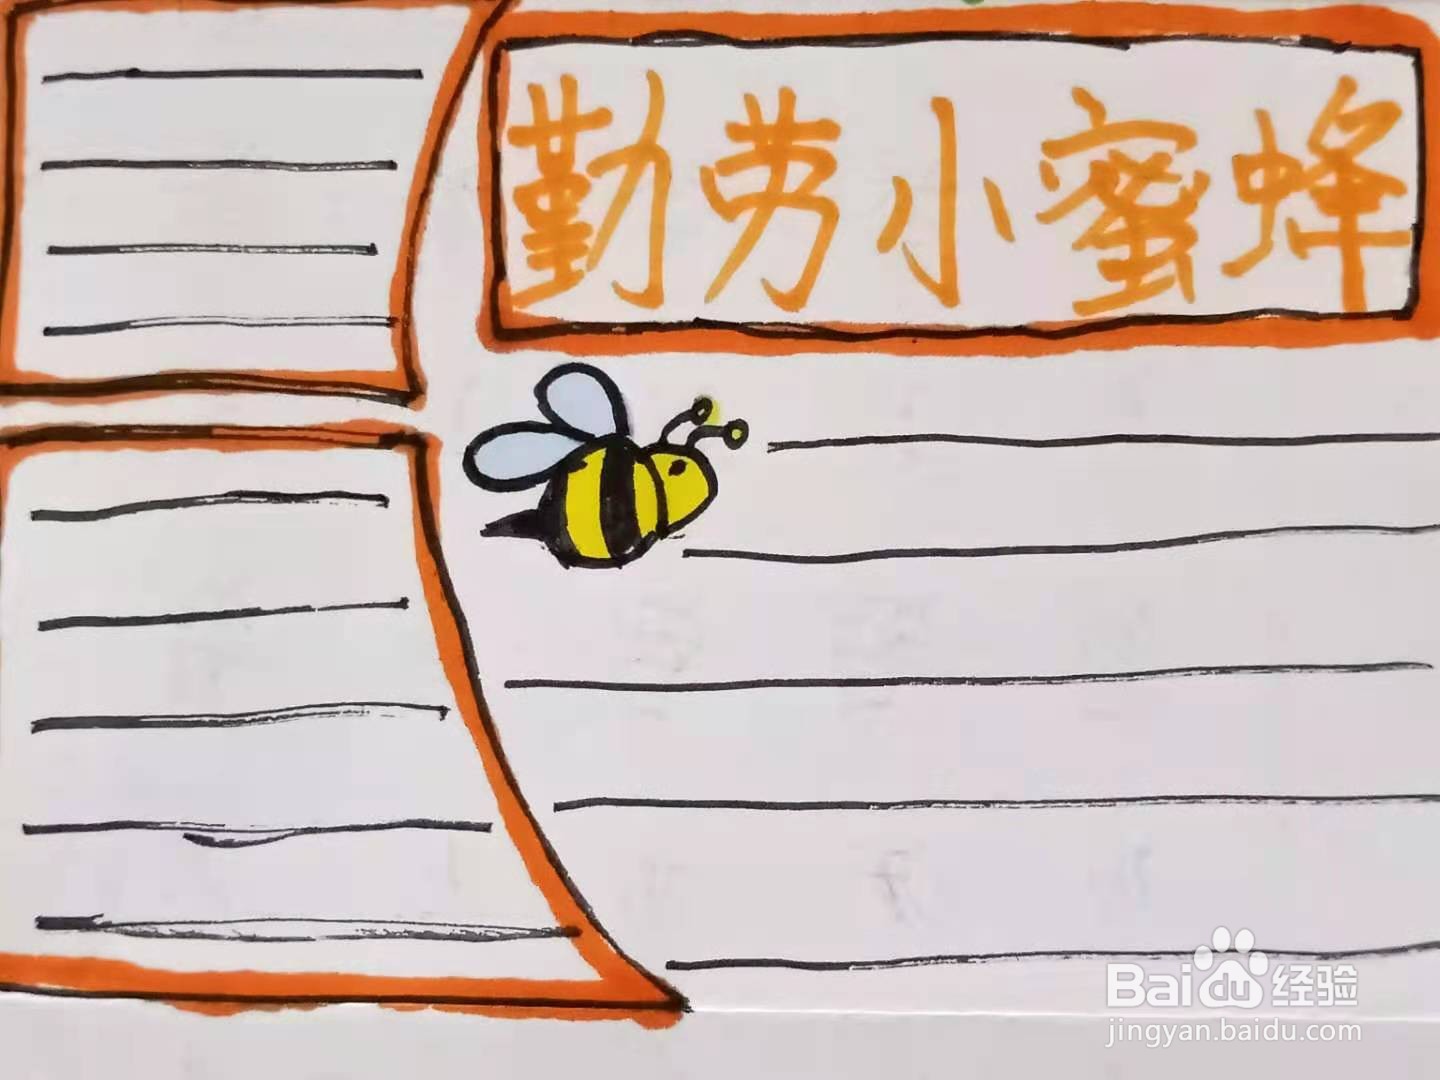 以蜜蜂为主题的手抄报图片